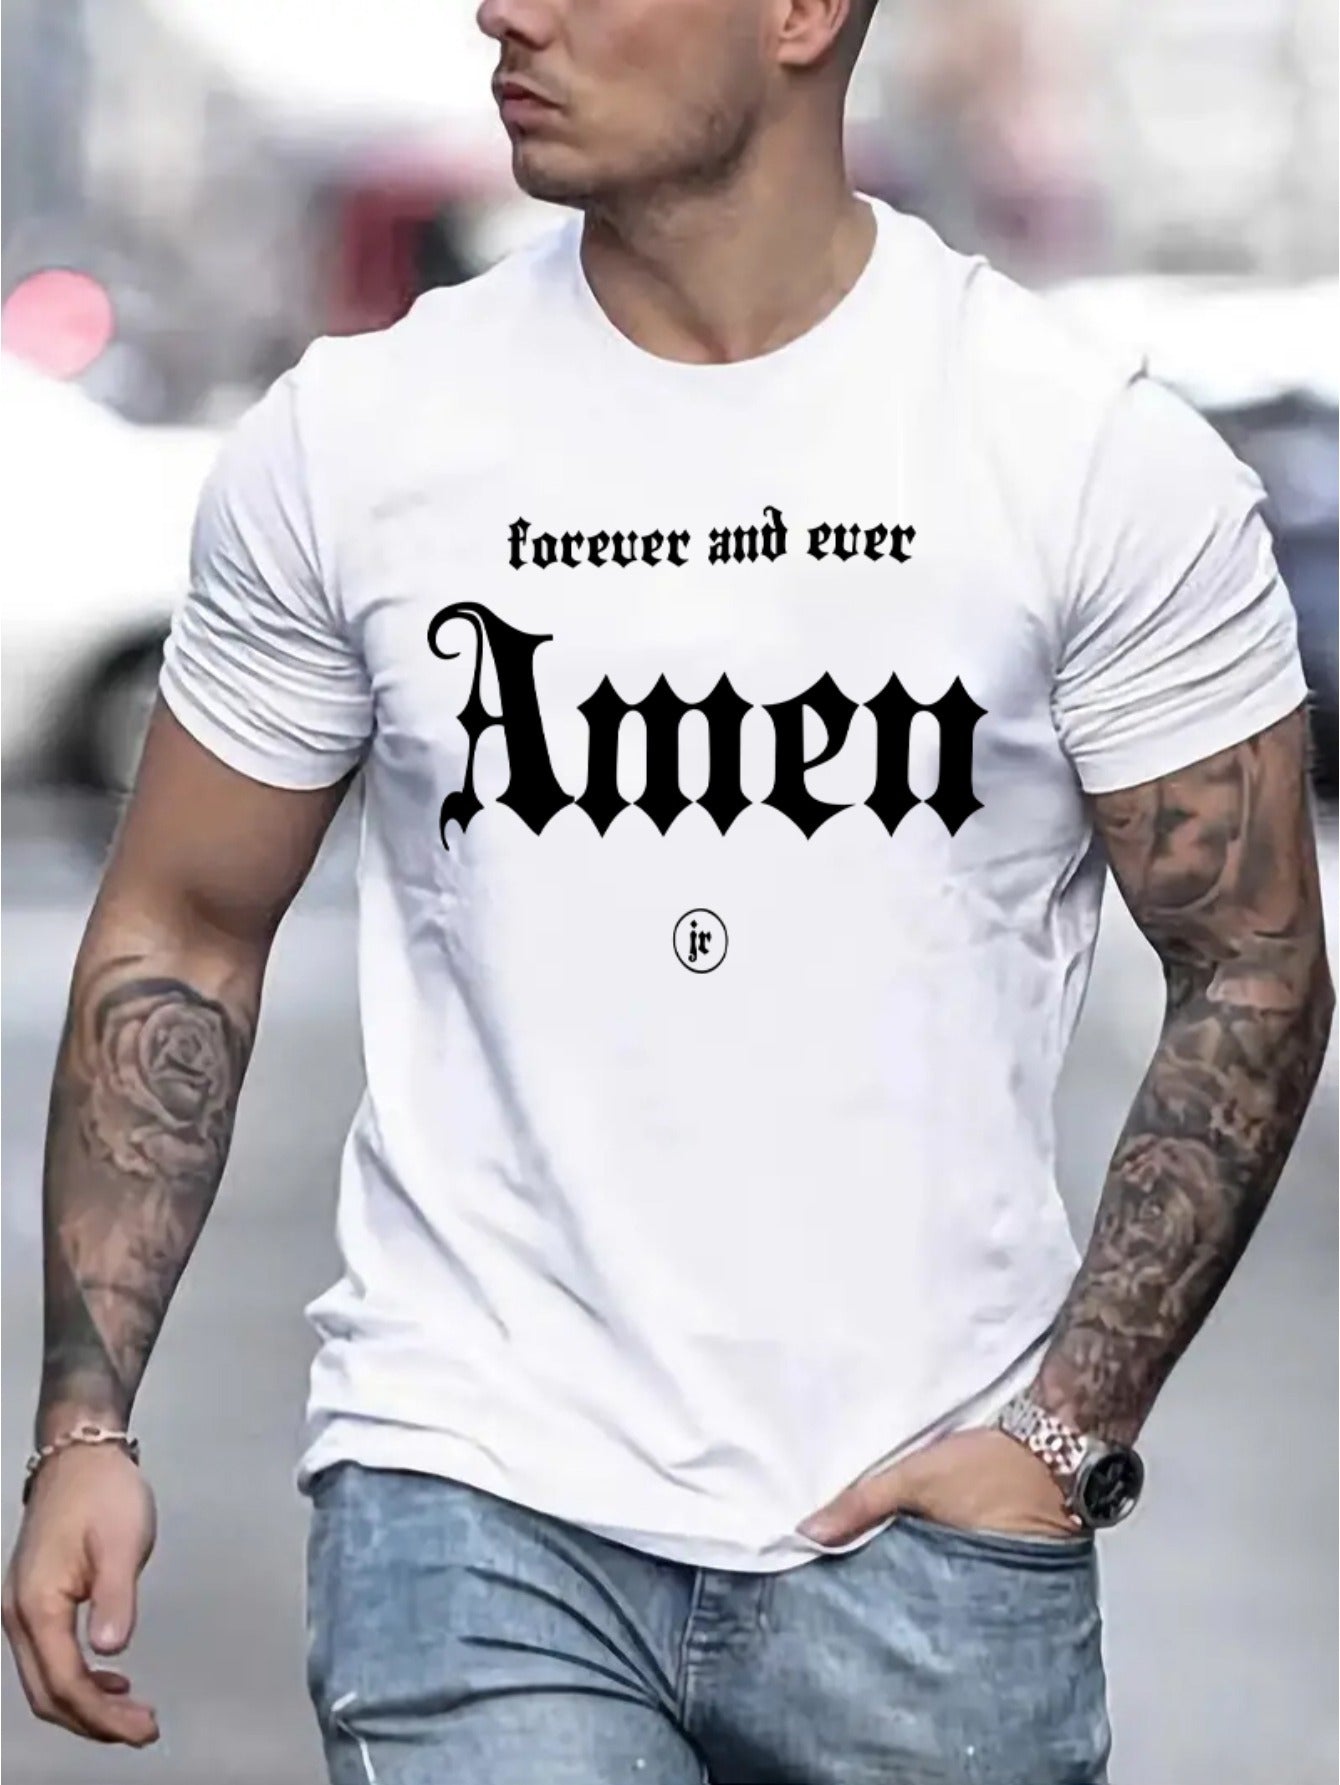 Forever And Ever Amen Men's Christian T-shirt claimedbygoddesigns